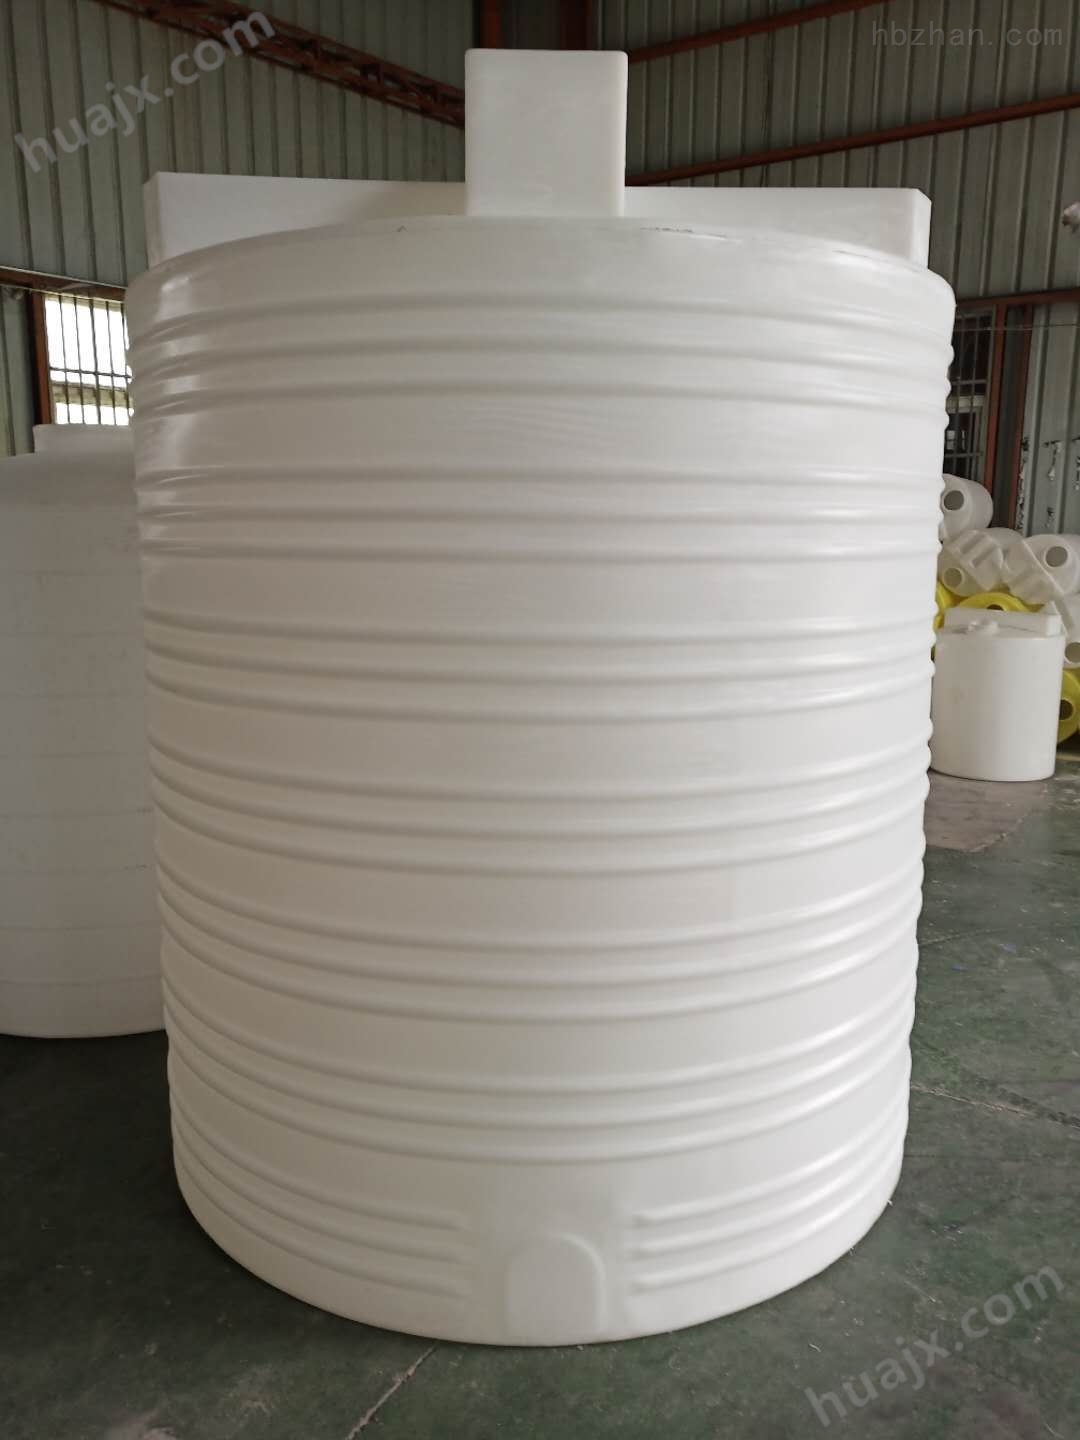 上海5立方塑料加药桶 混凝剂储罐